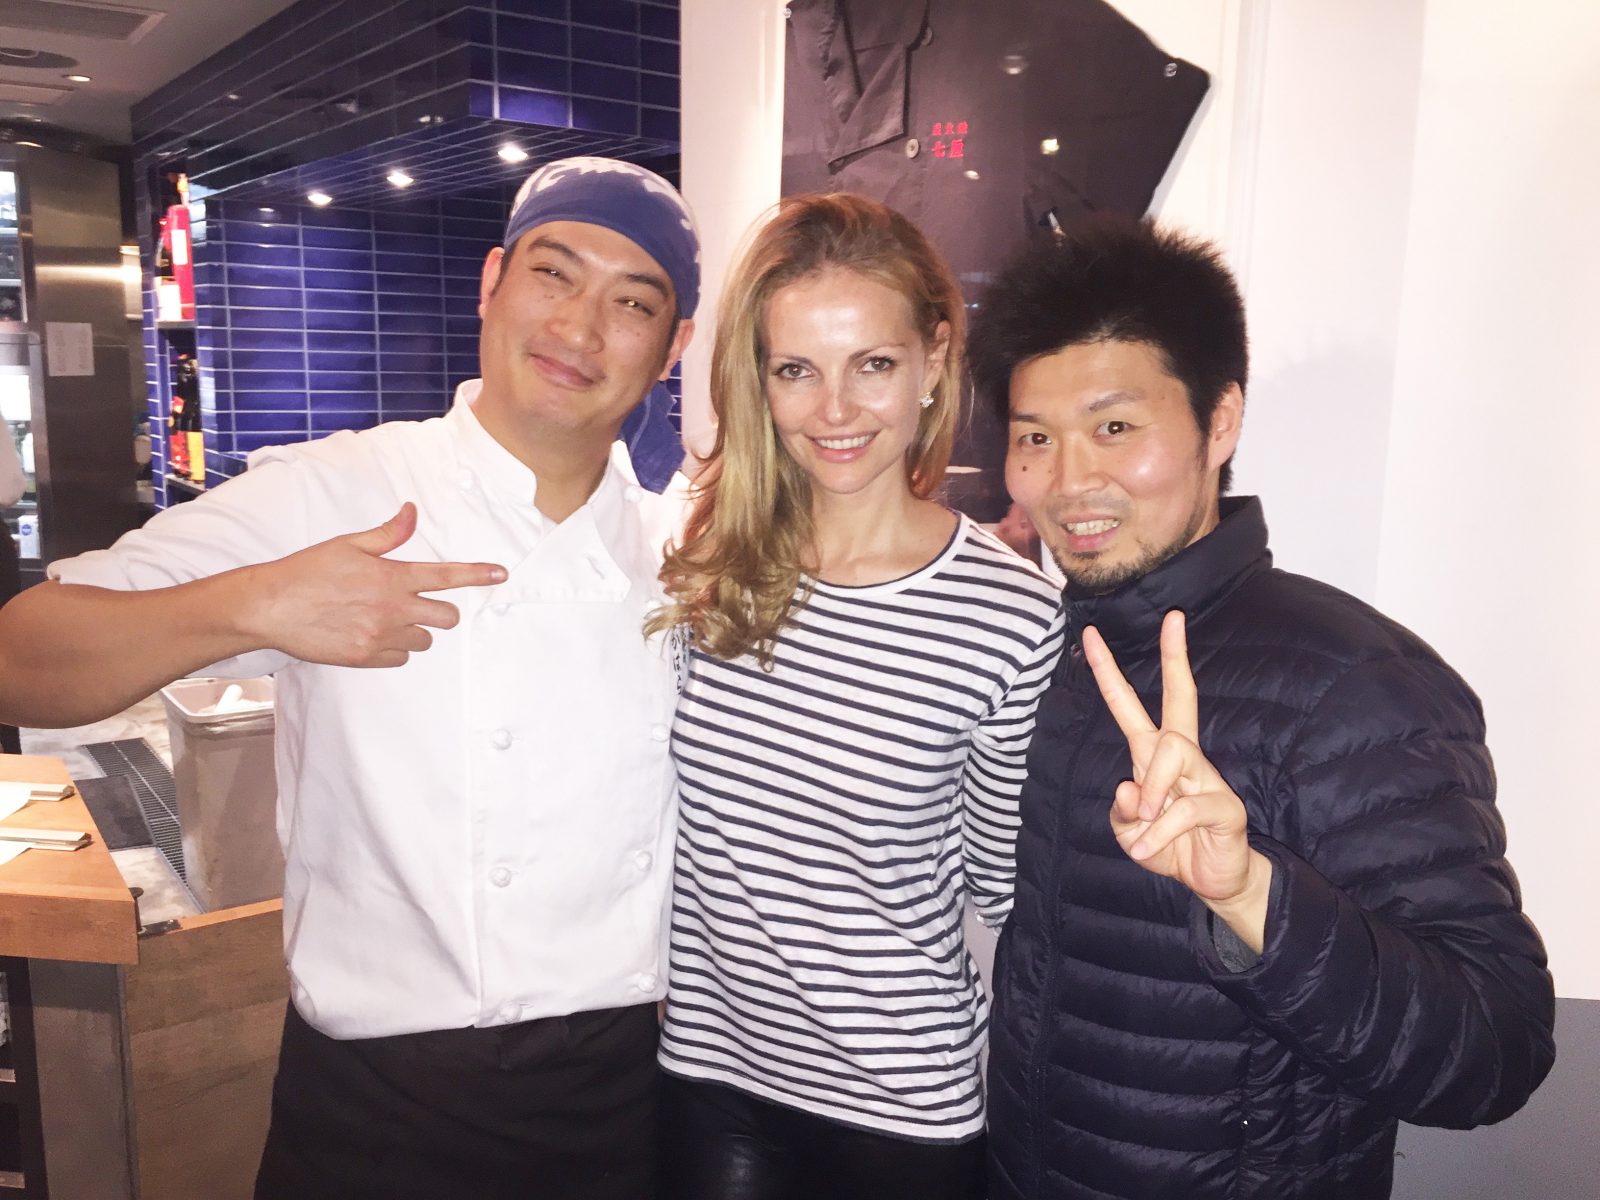 Chefs Kentaro Nakahara and Den's Zaiyu Hasegawa, with who I had a pleasure to have dinner at Nakahara